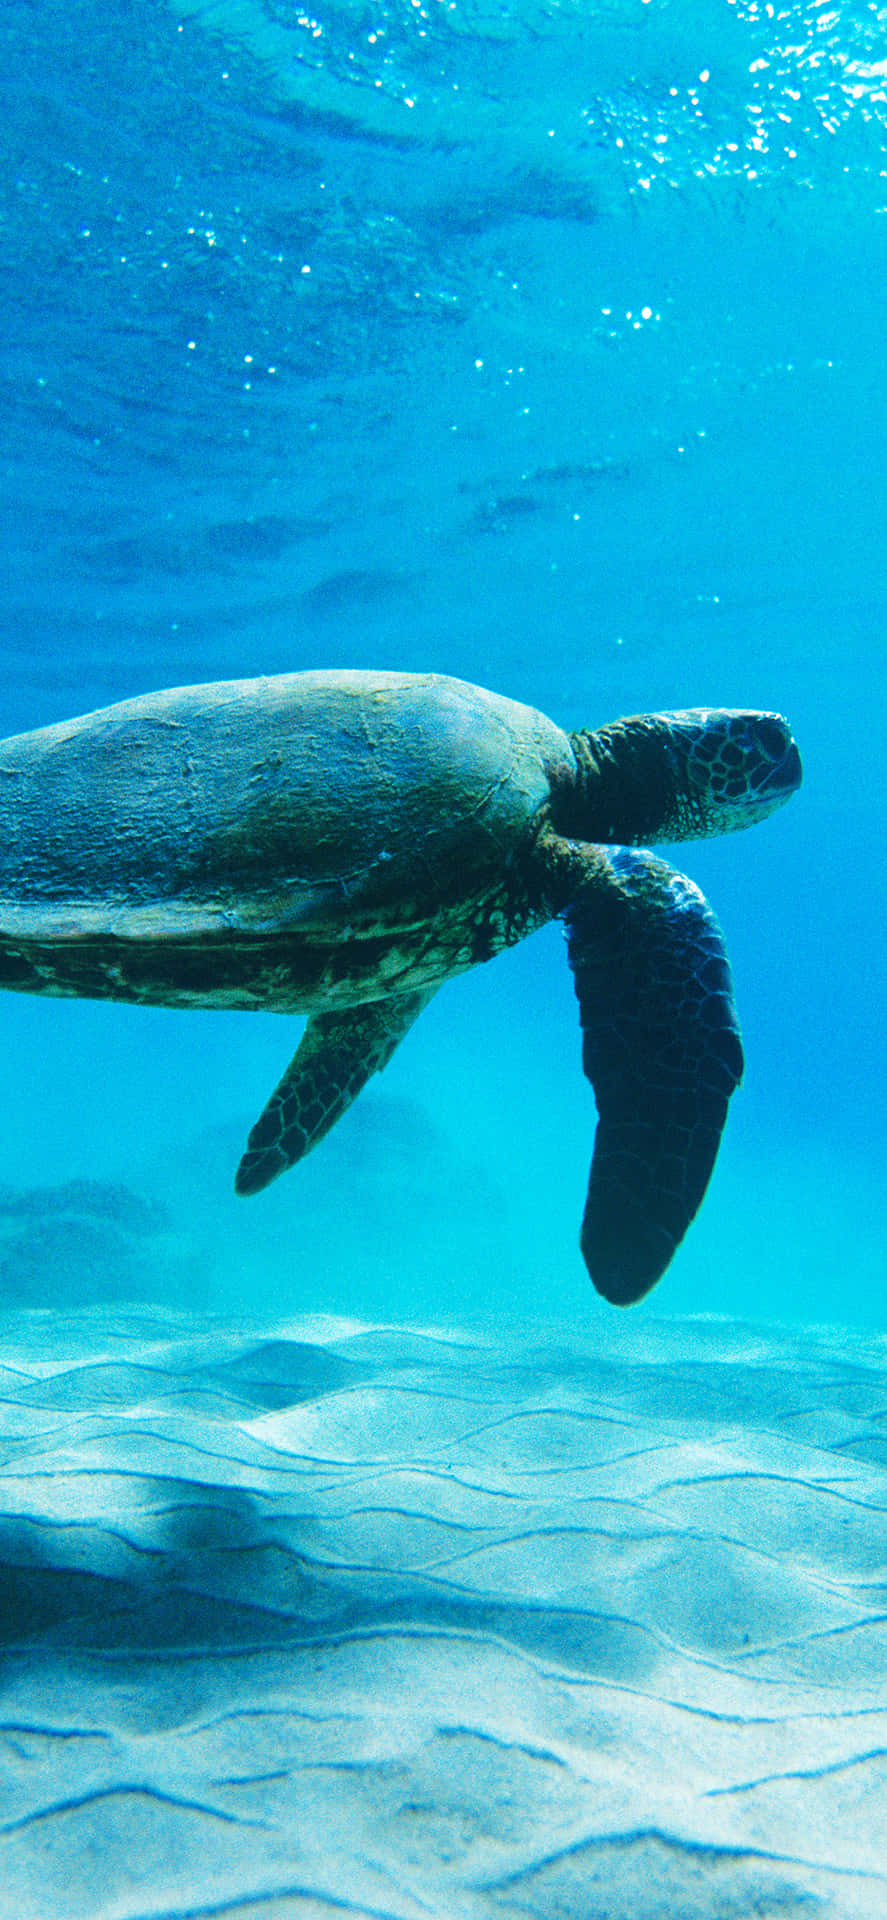 Umatartaruga Nadando No Oceano Papel de Parede